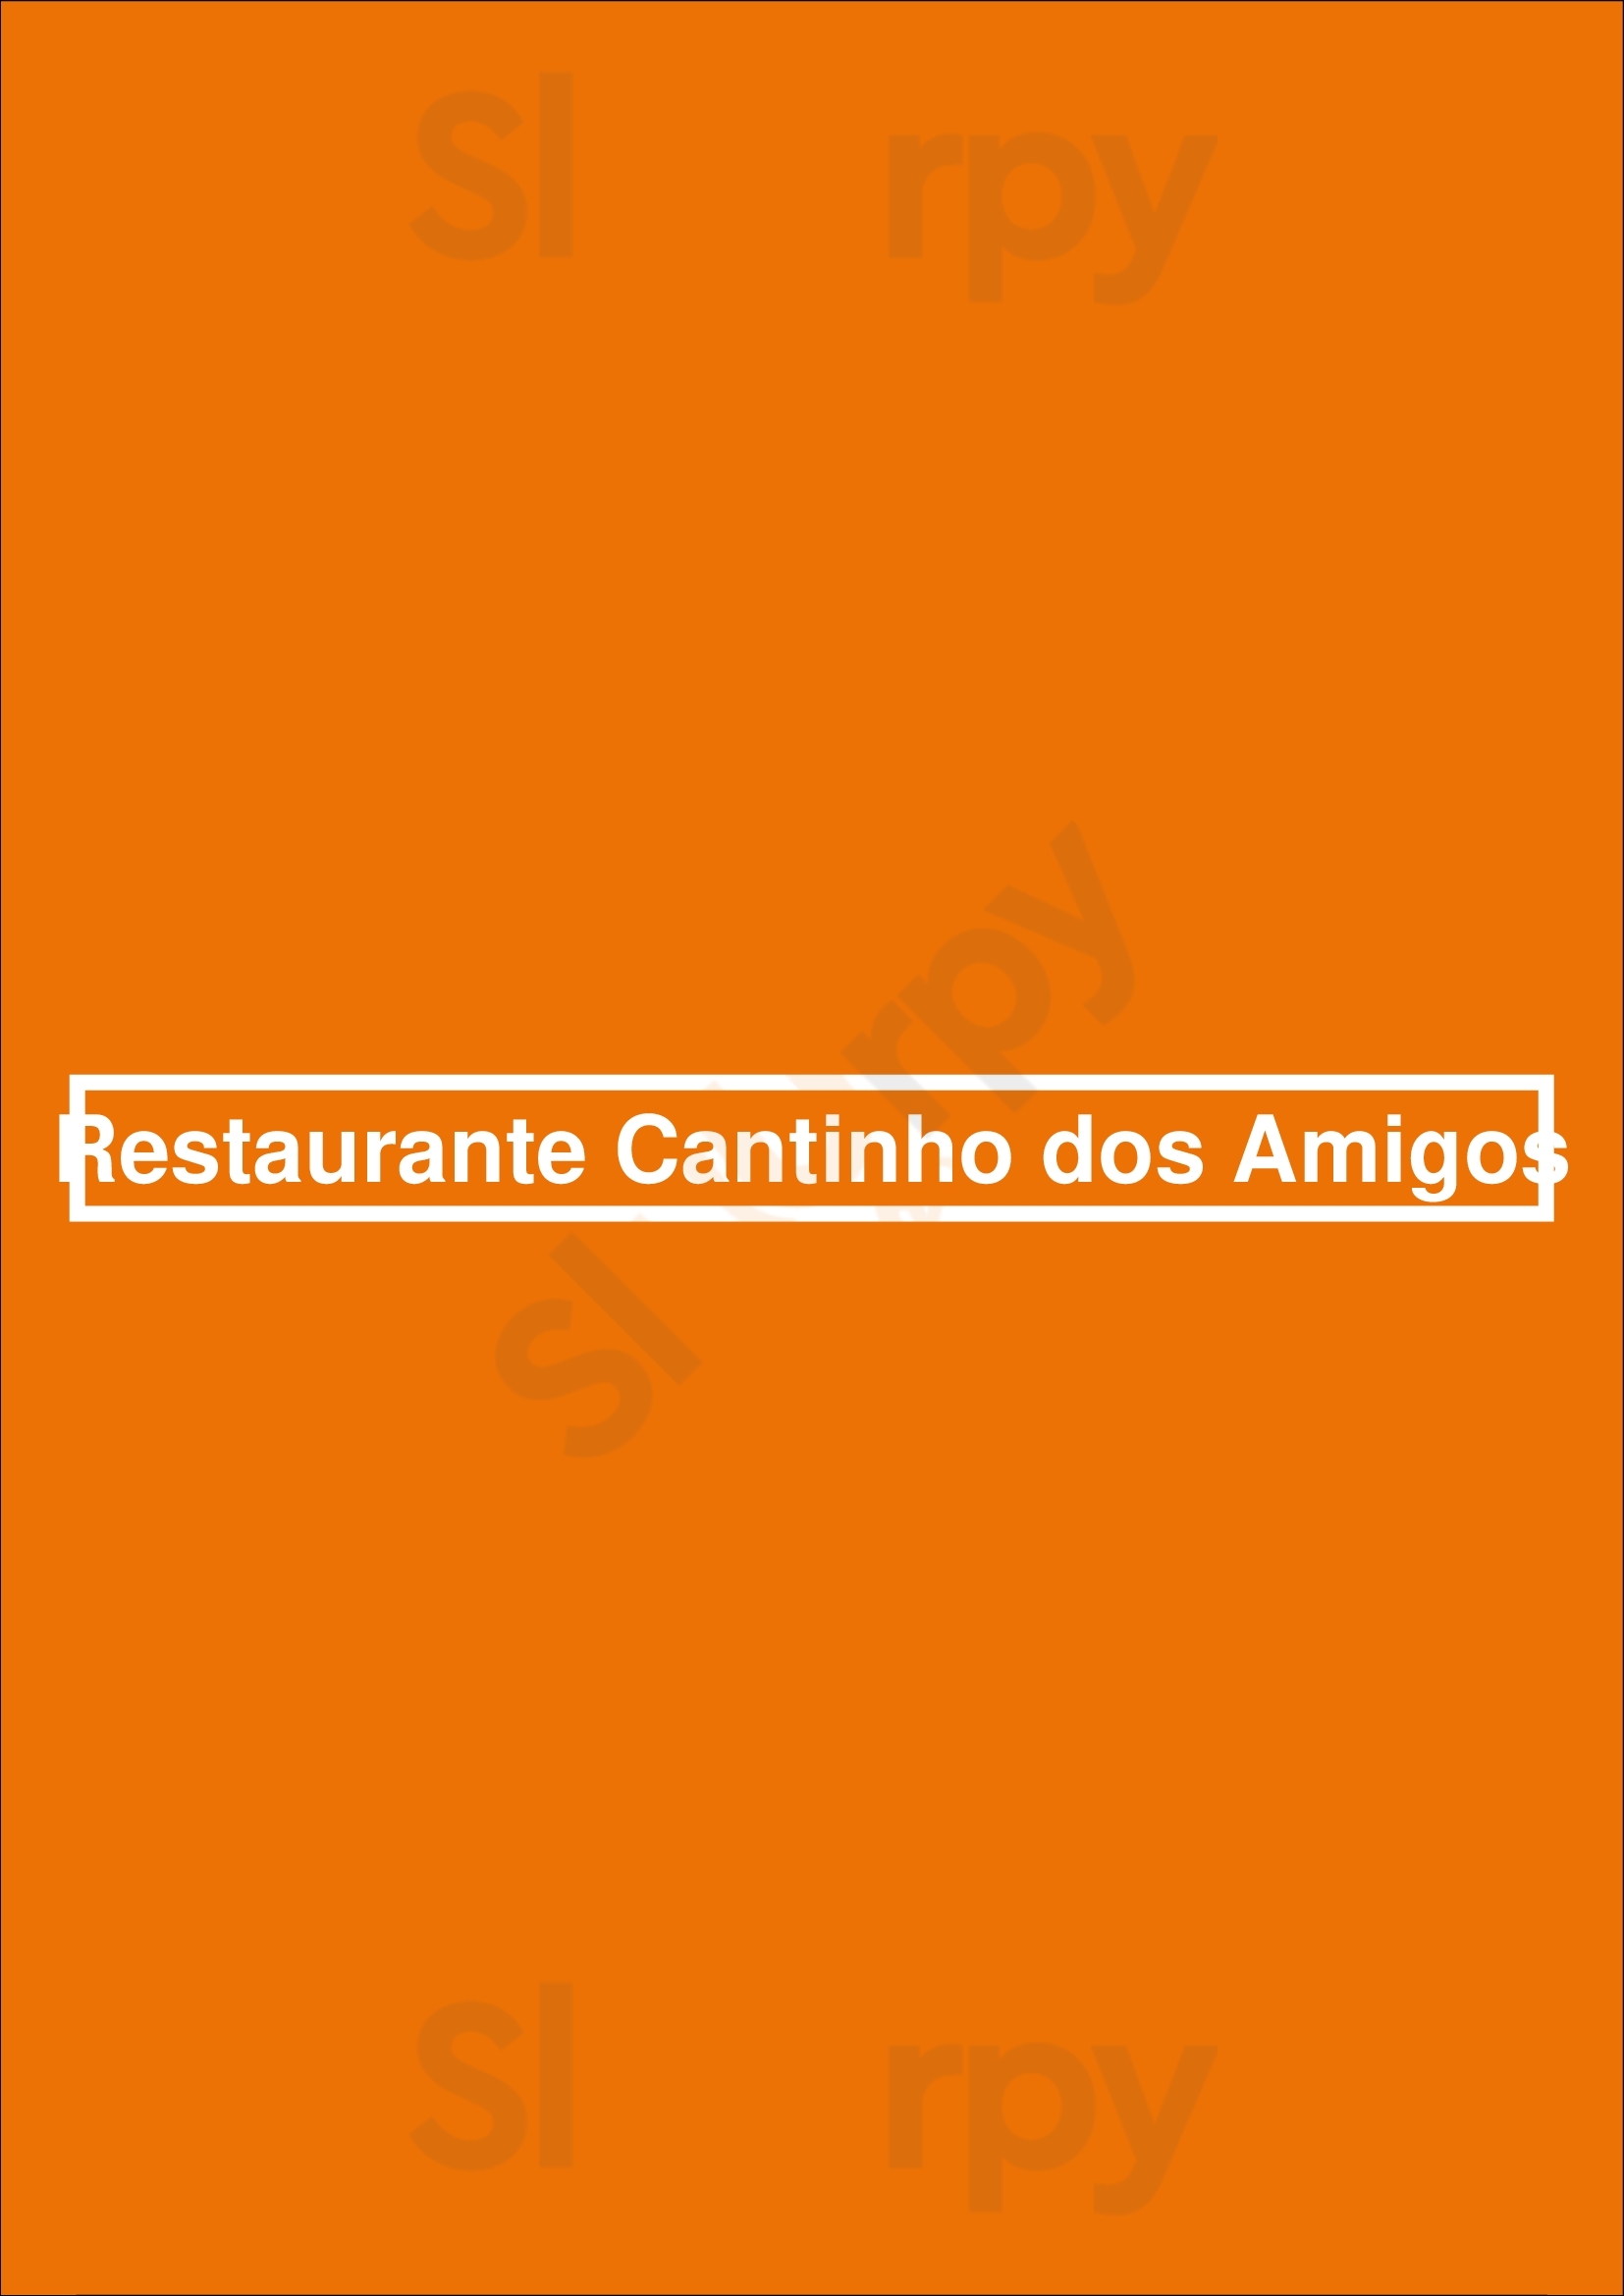 Restaurante Cantinho Dos Amigos Funchal Menu - 1